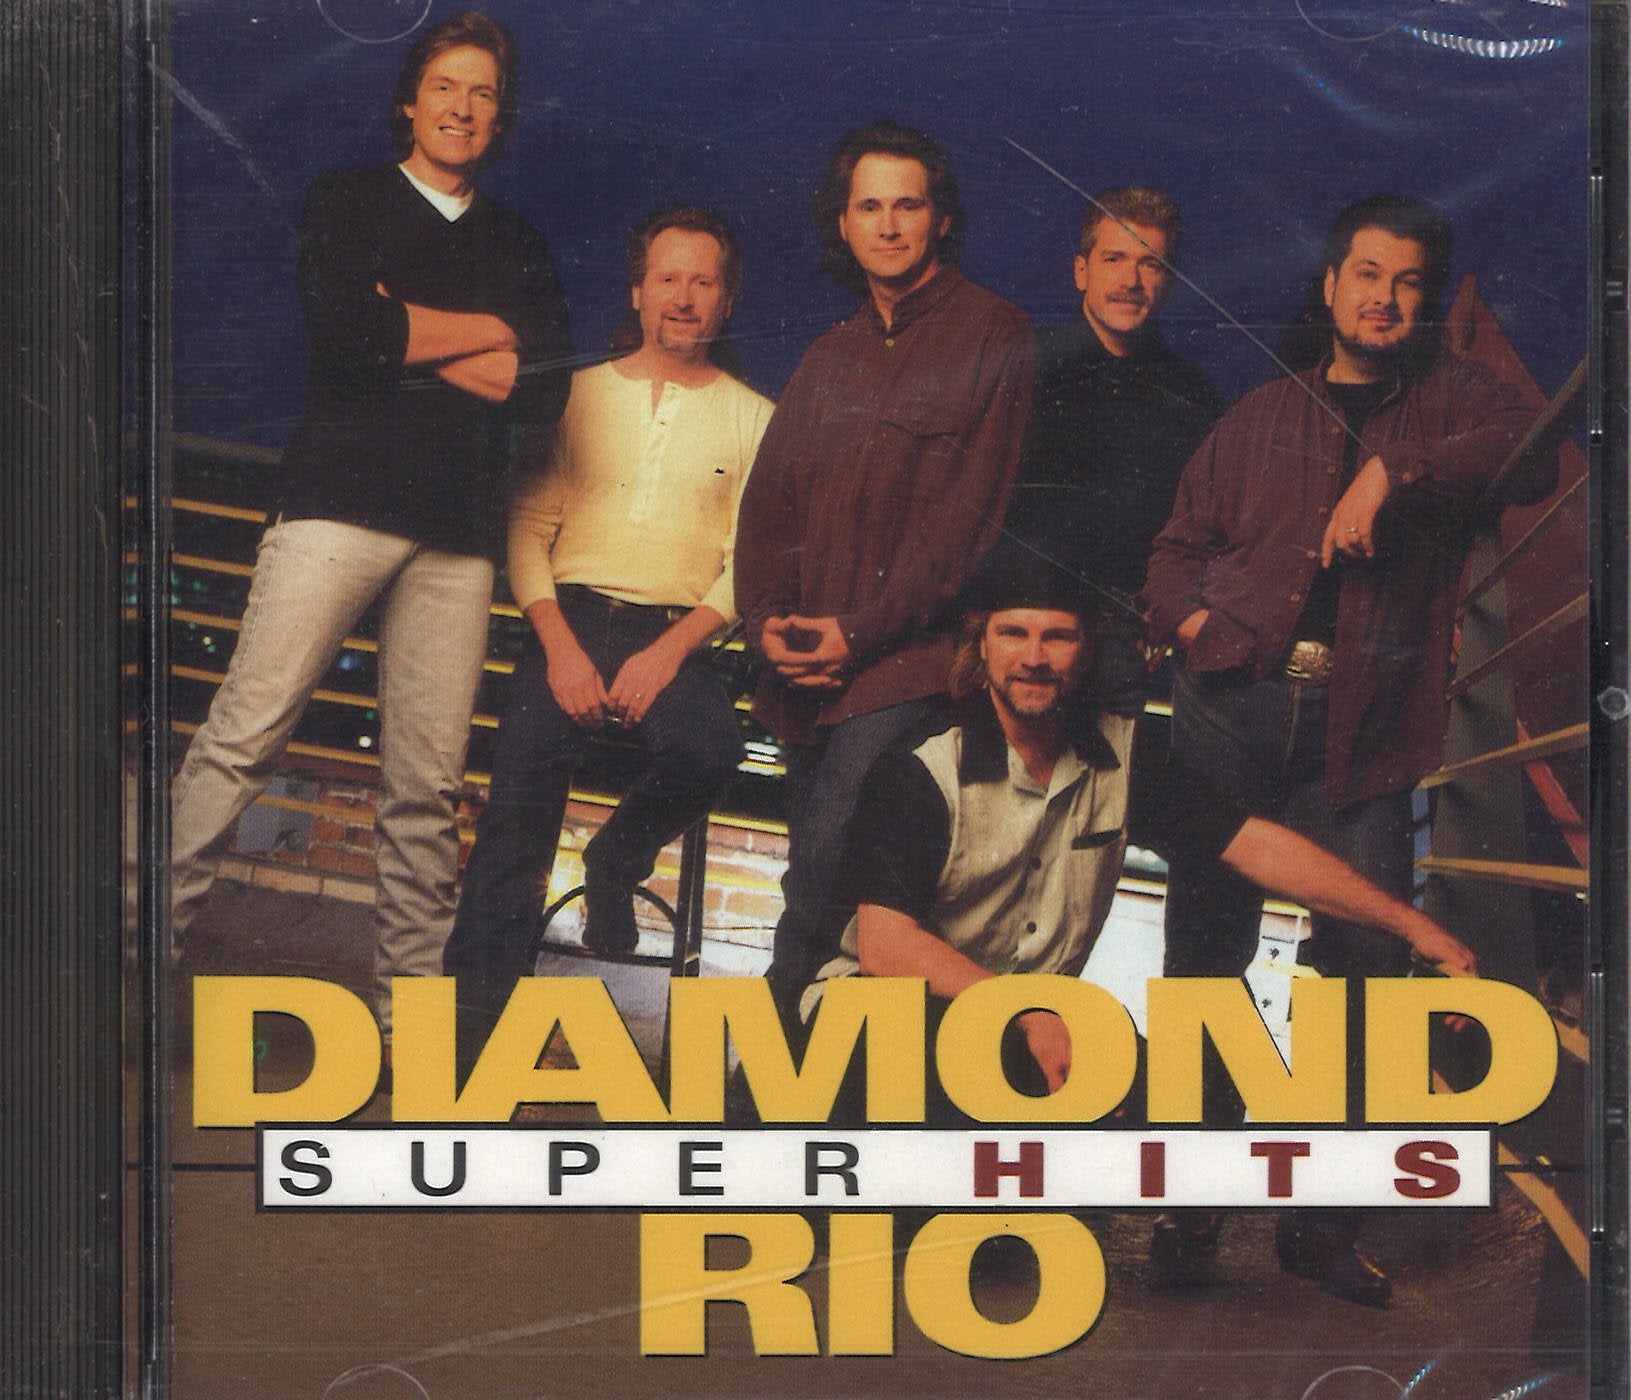 Diamond Rio Super Hits